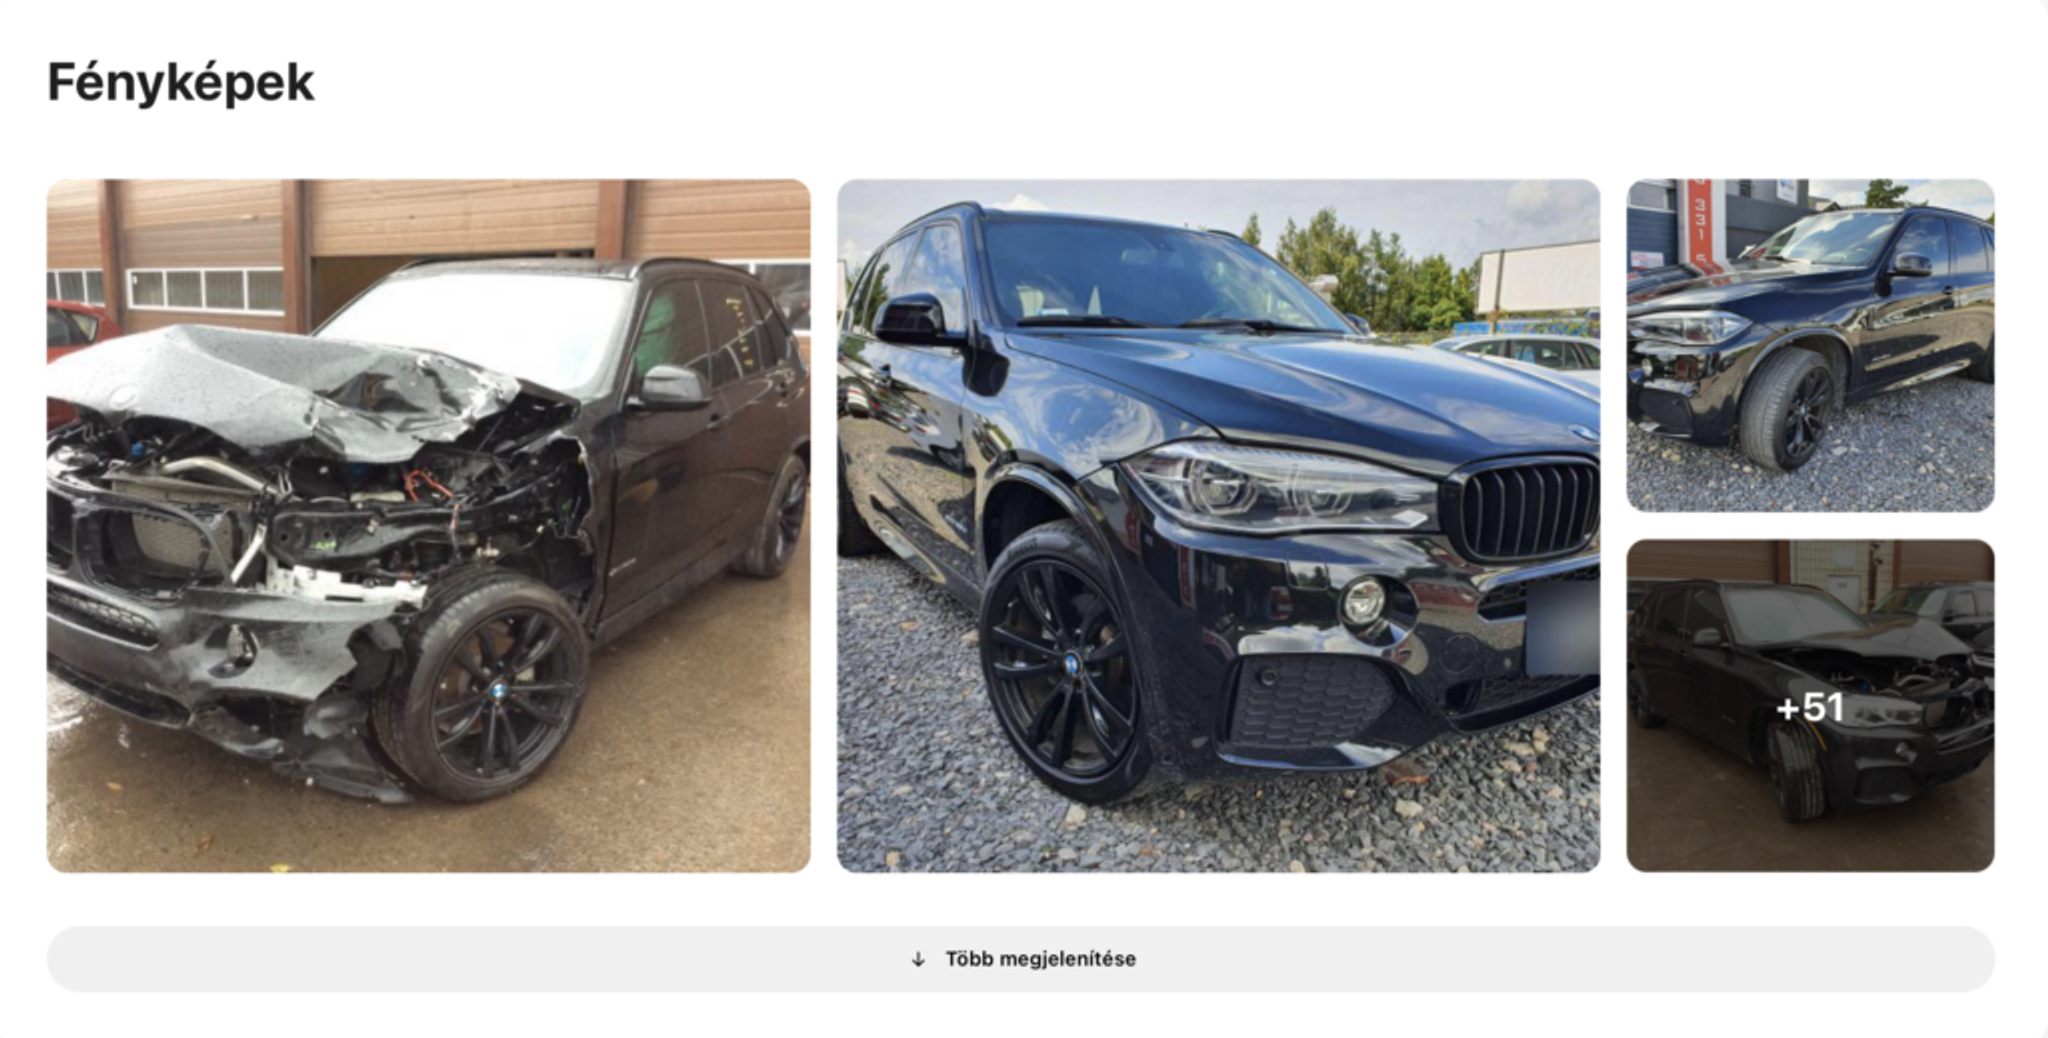 autóban talált bmw fotók egy baleset utánVertikális, sérült autó, összetört jármű, autó komoly javítások előtt és után